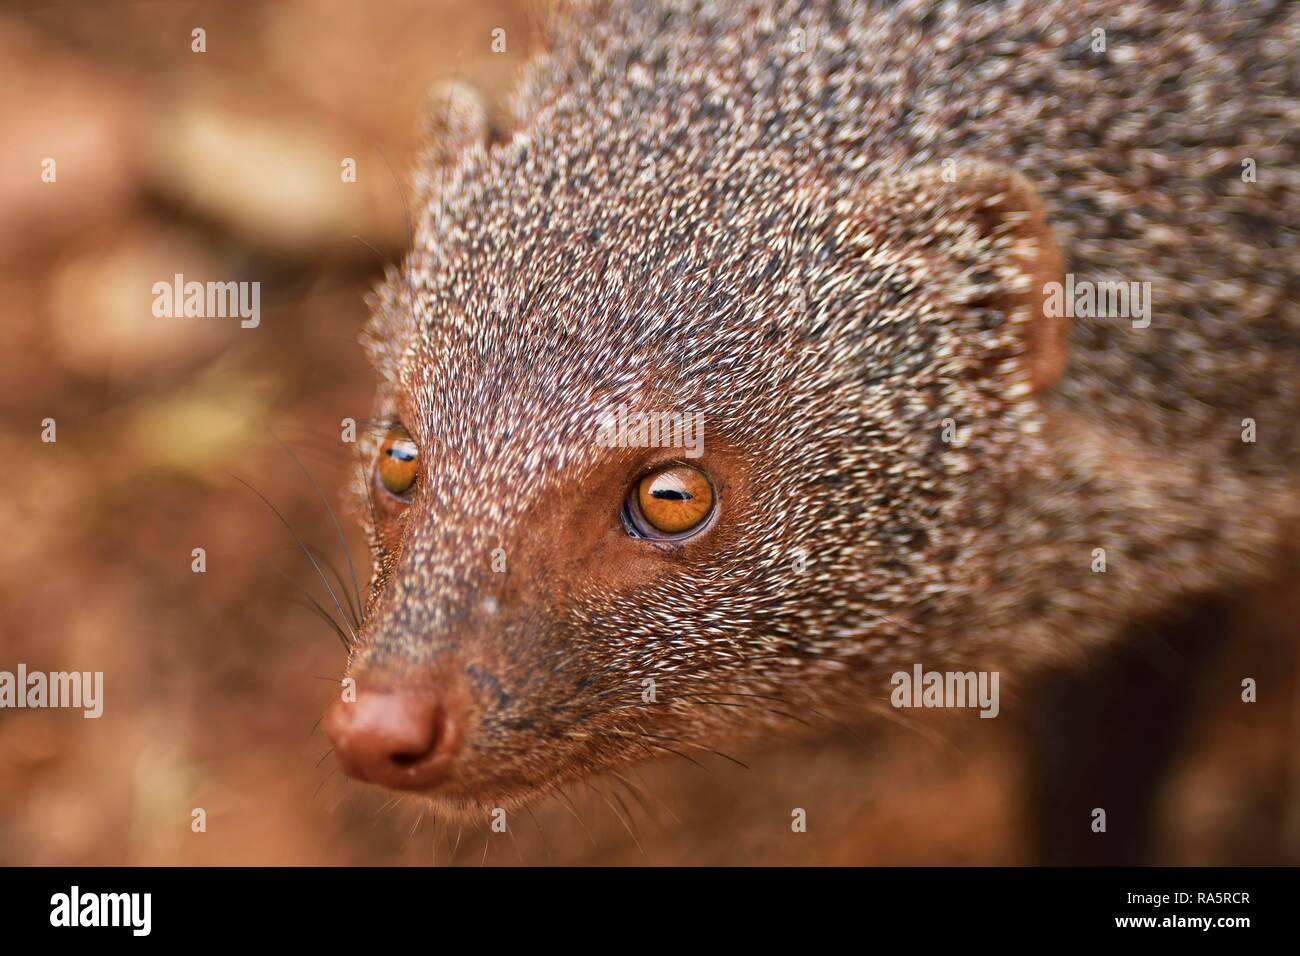 Indian gray mongoose (Herpestes edwardsii), adult, animal portrait, Yala National Park, Sri Lanka Stock Photo